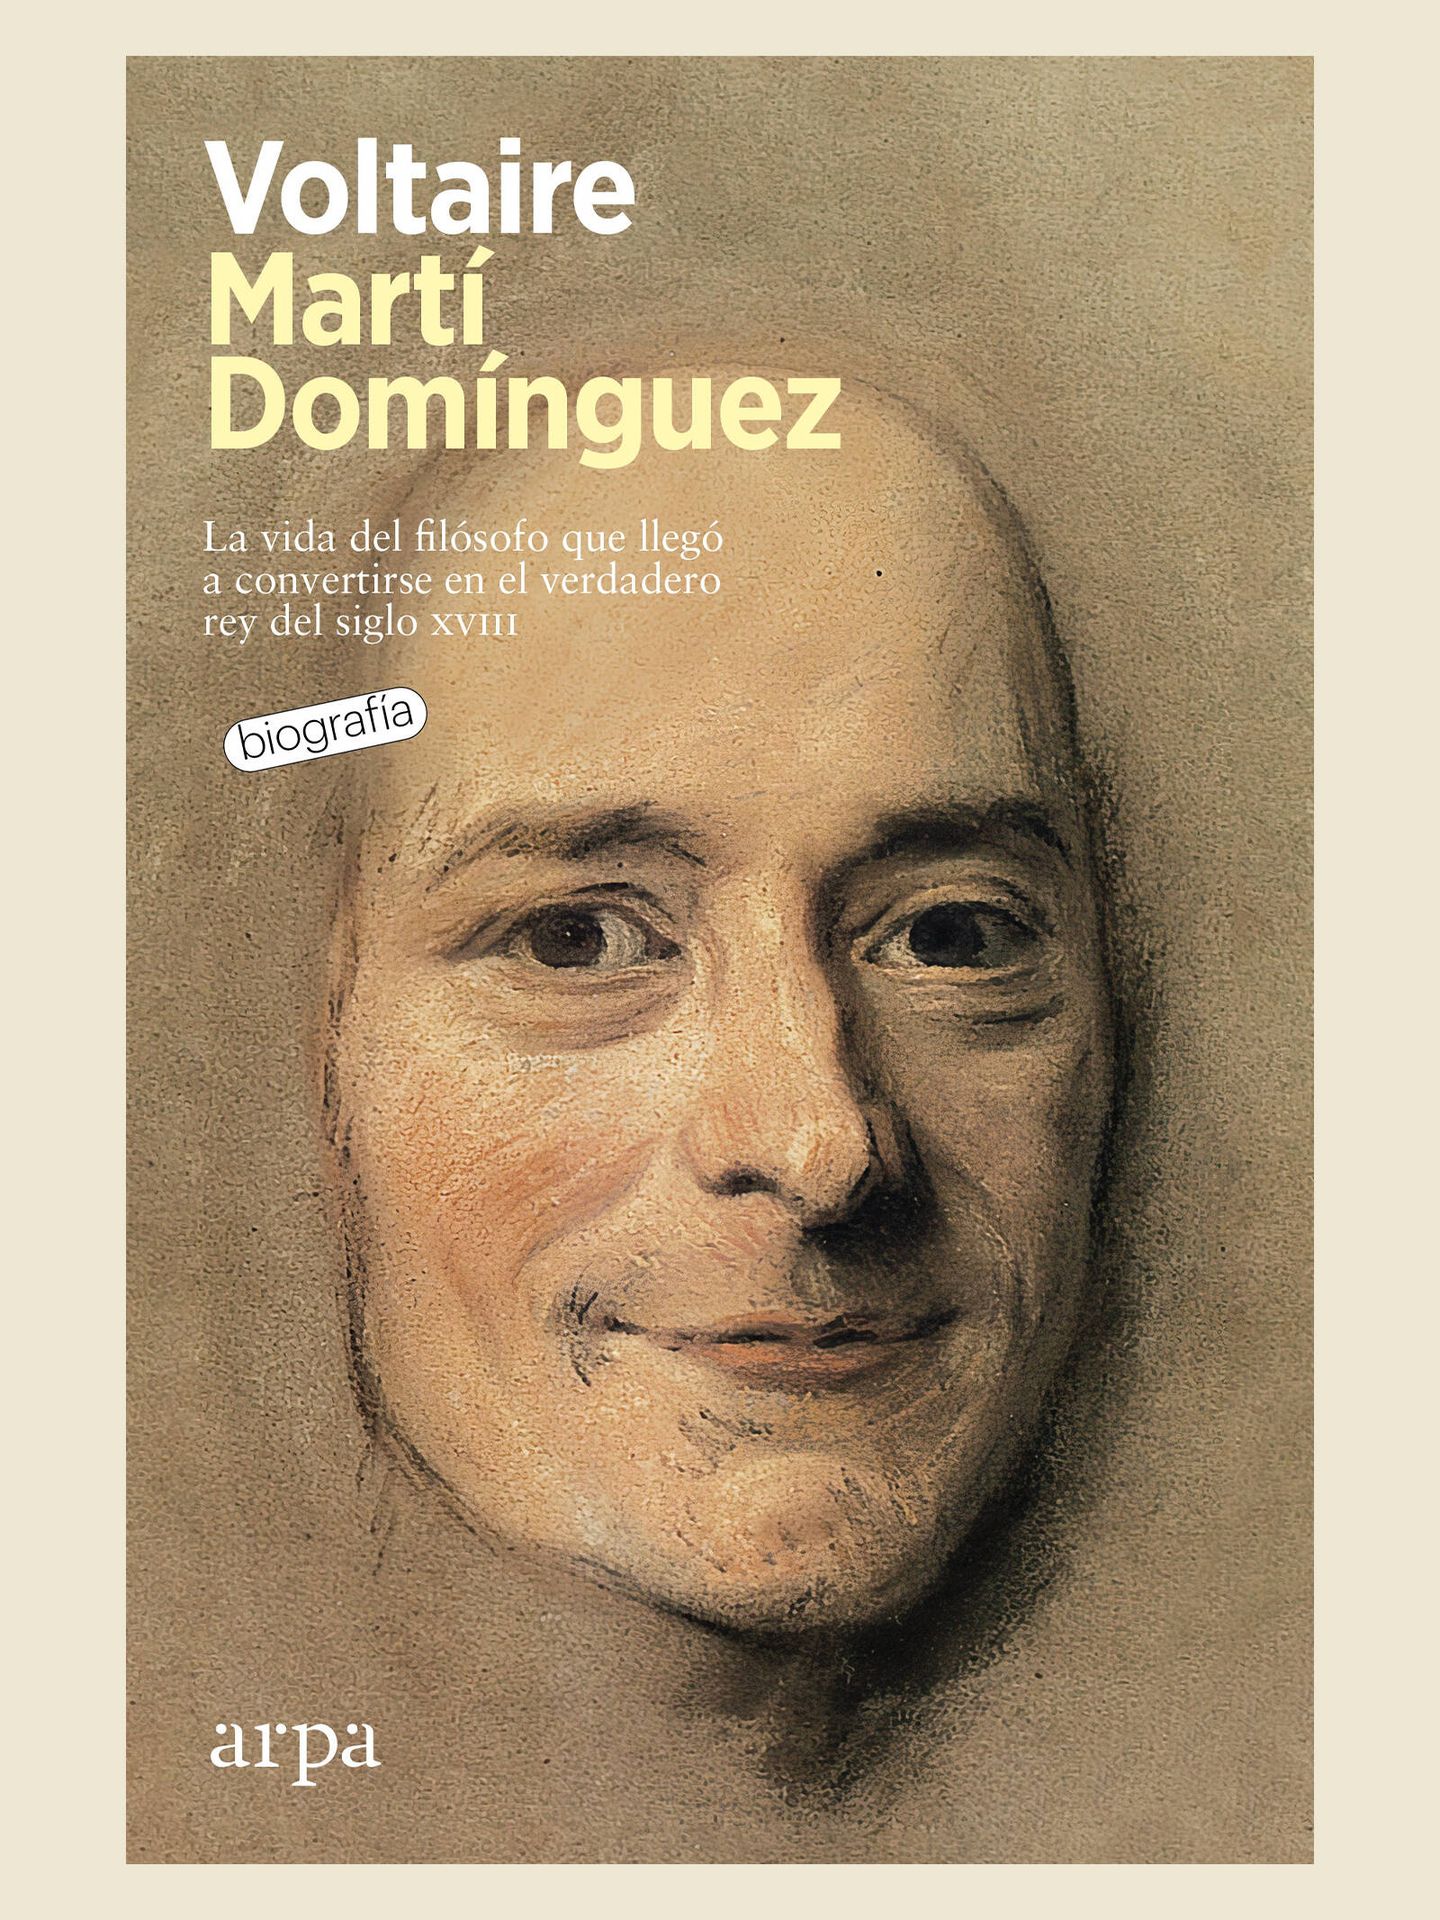 Portada de 'Voltaire', la nueva biografía sobre el filósofo escrita por Martí Domínguez.